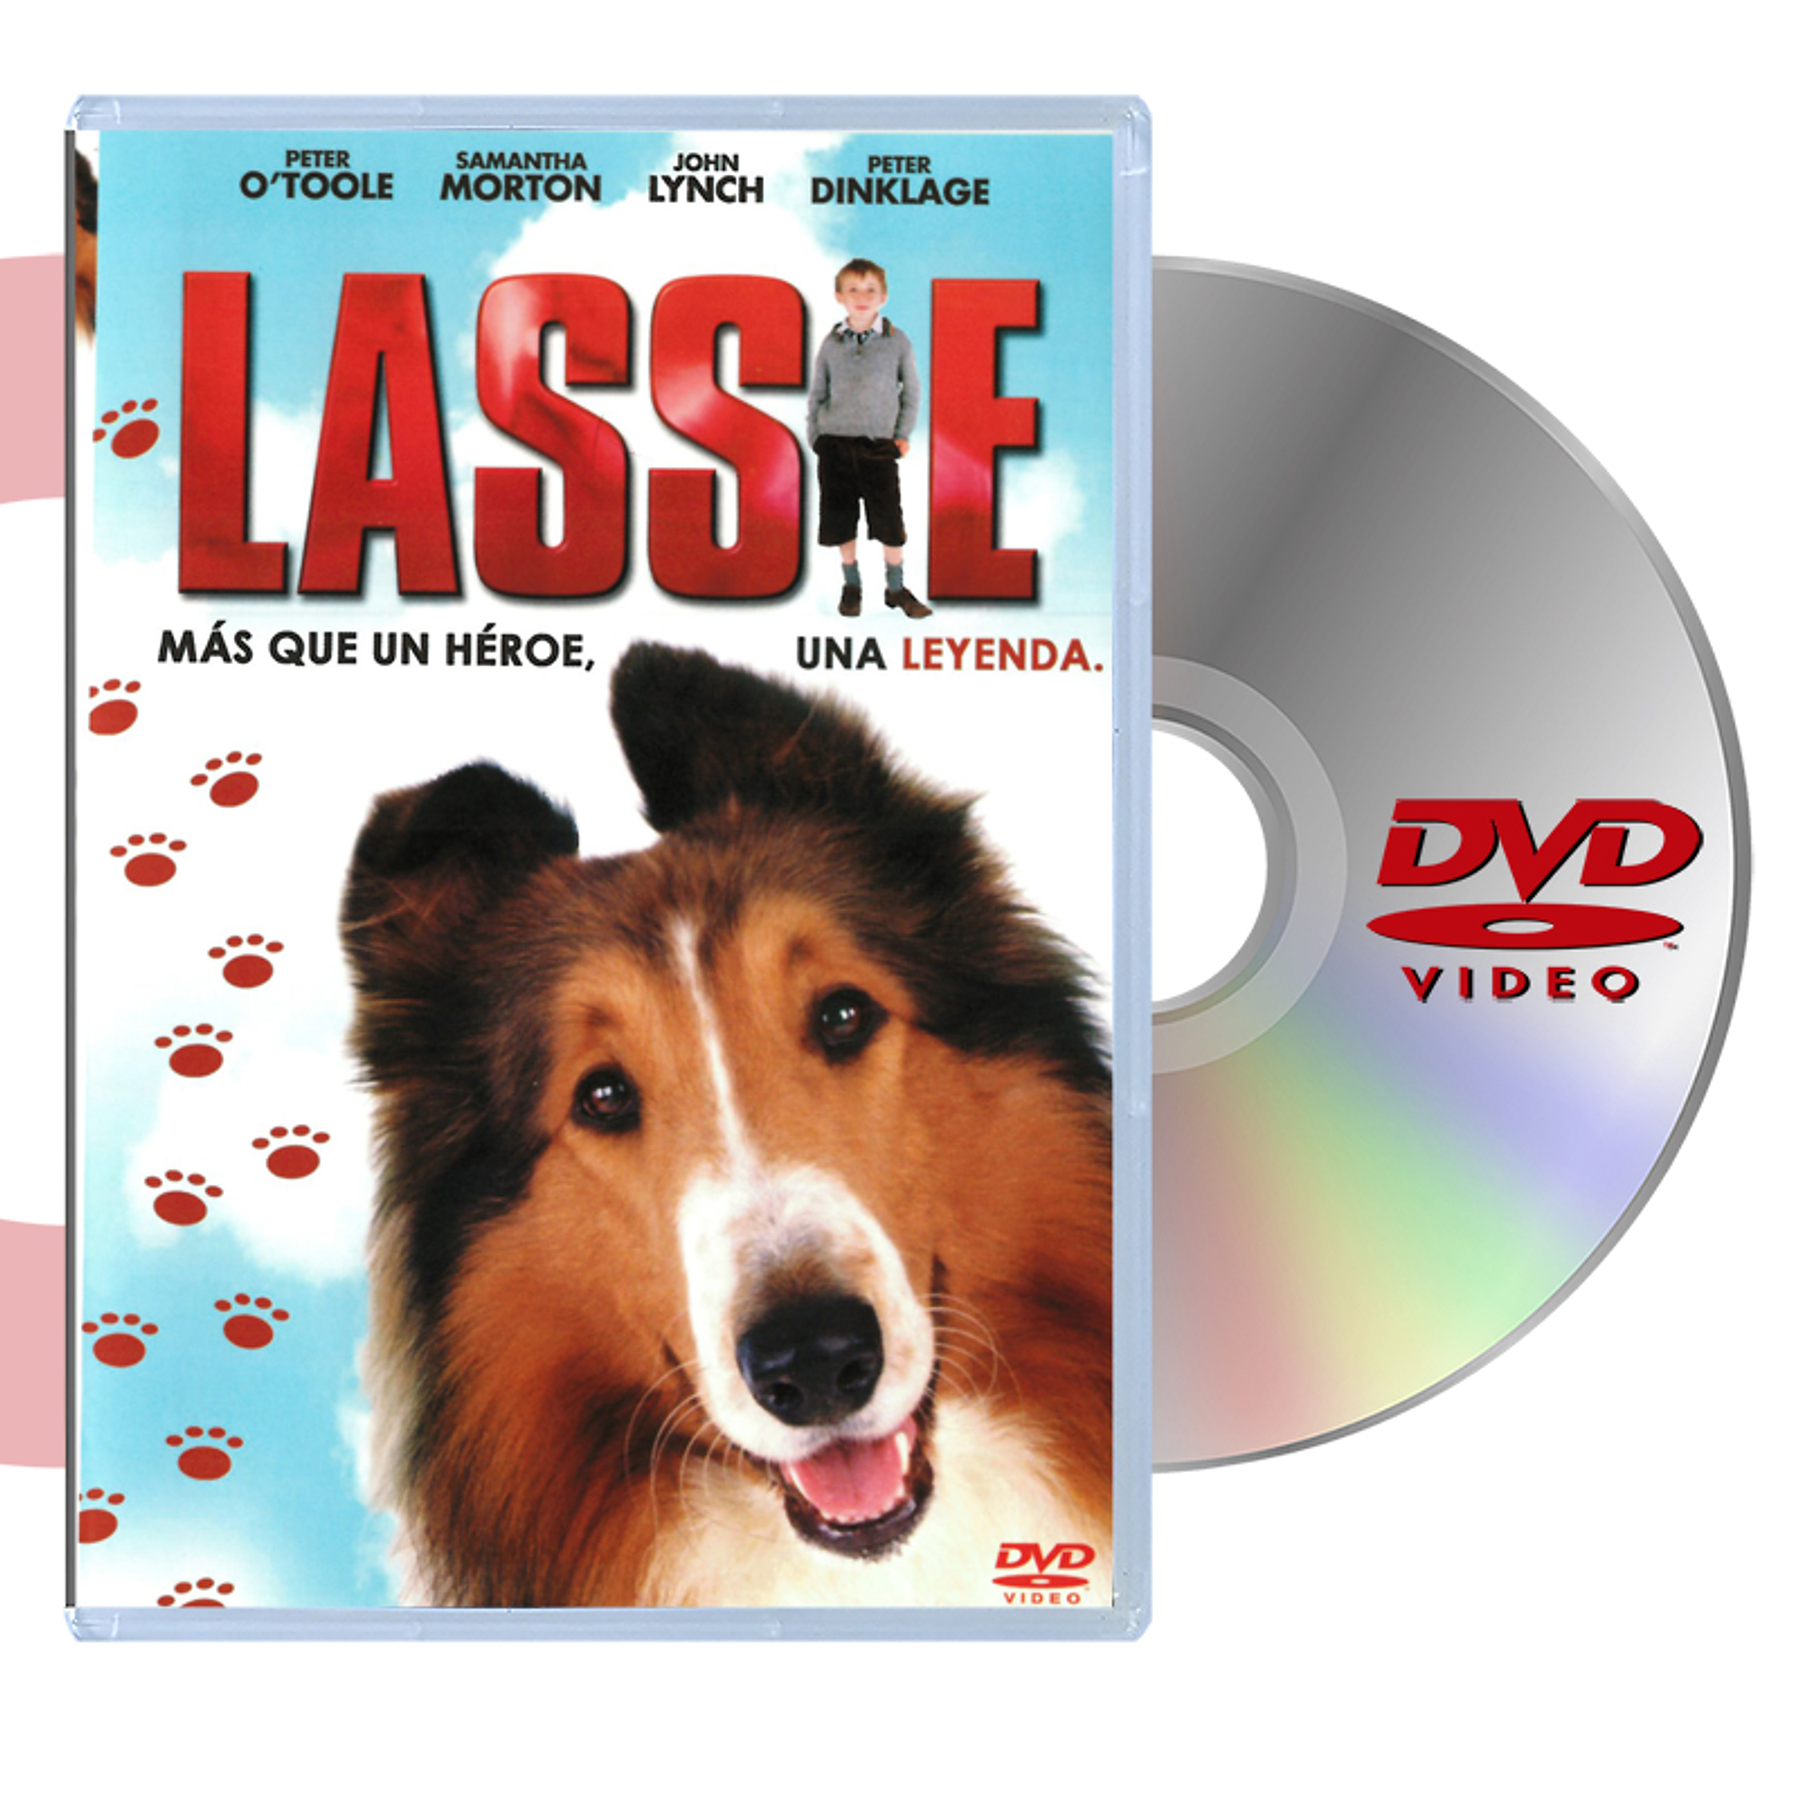 DVD LASSIE (MAS QUE UN HEROE UNA LEYENDA)